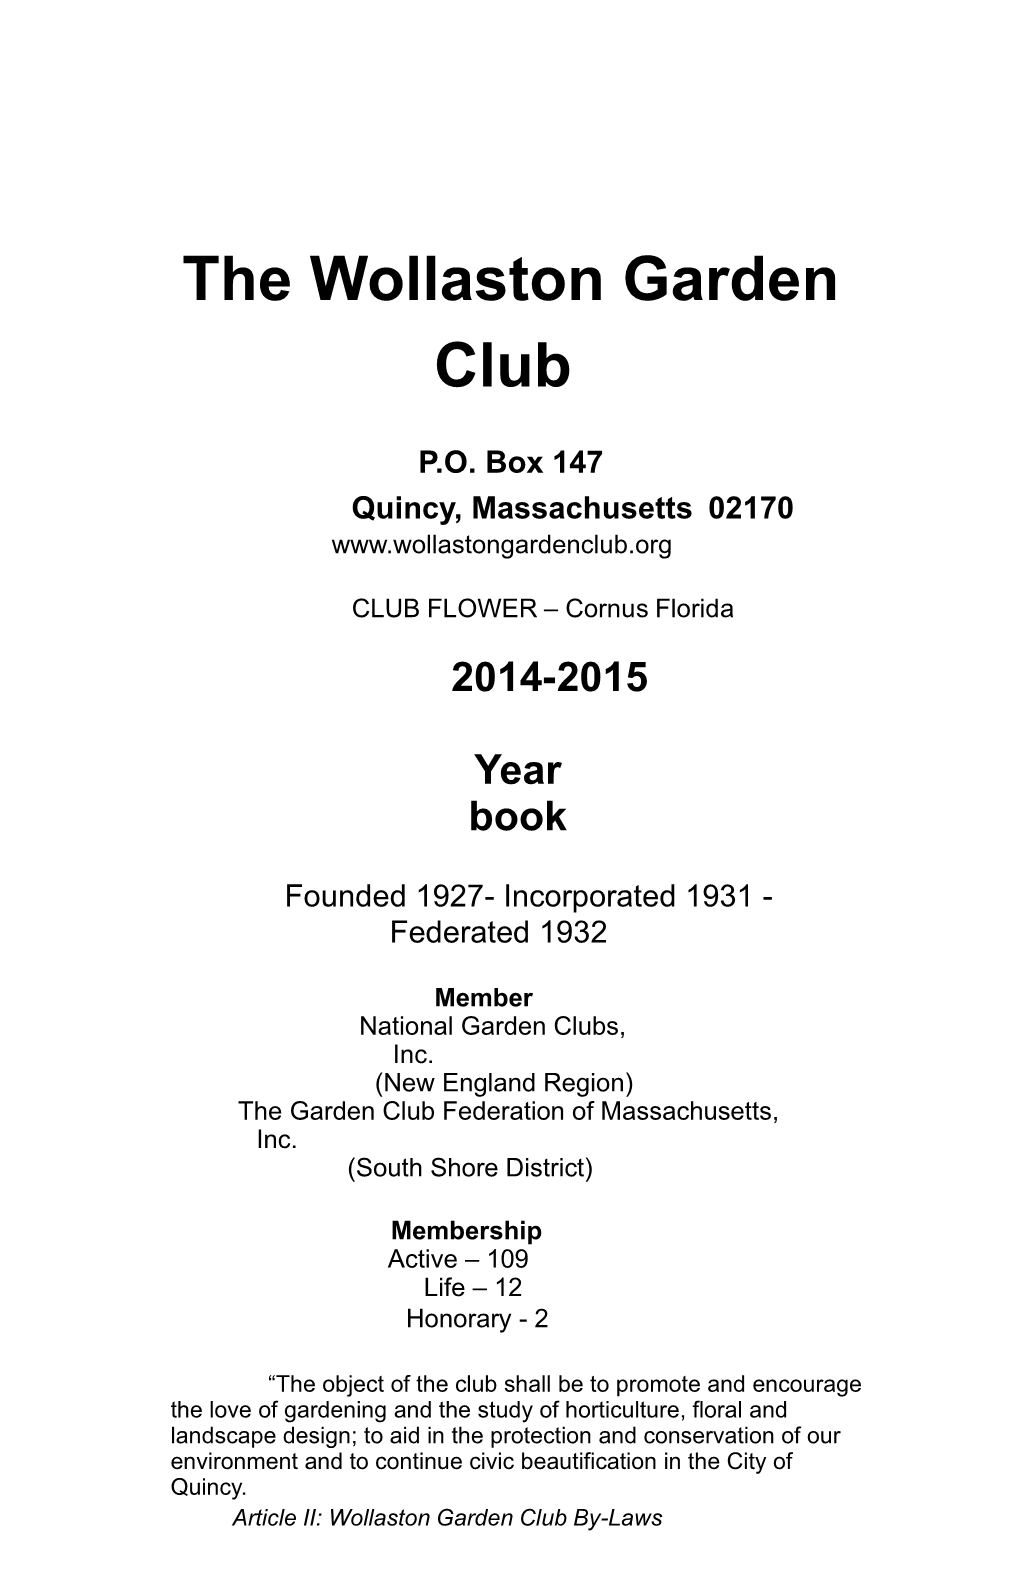 WGC Yearbook 2014-2015